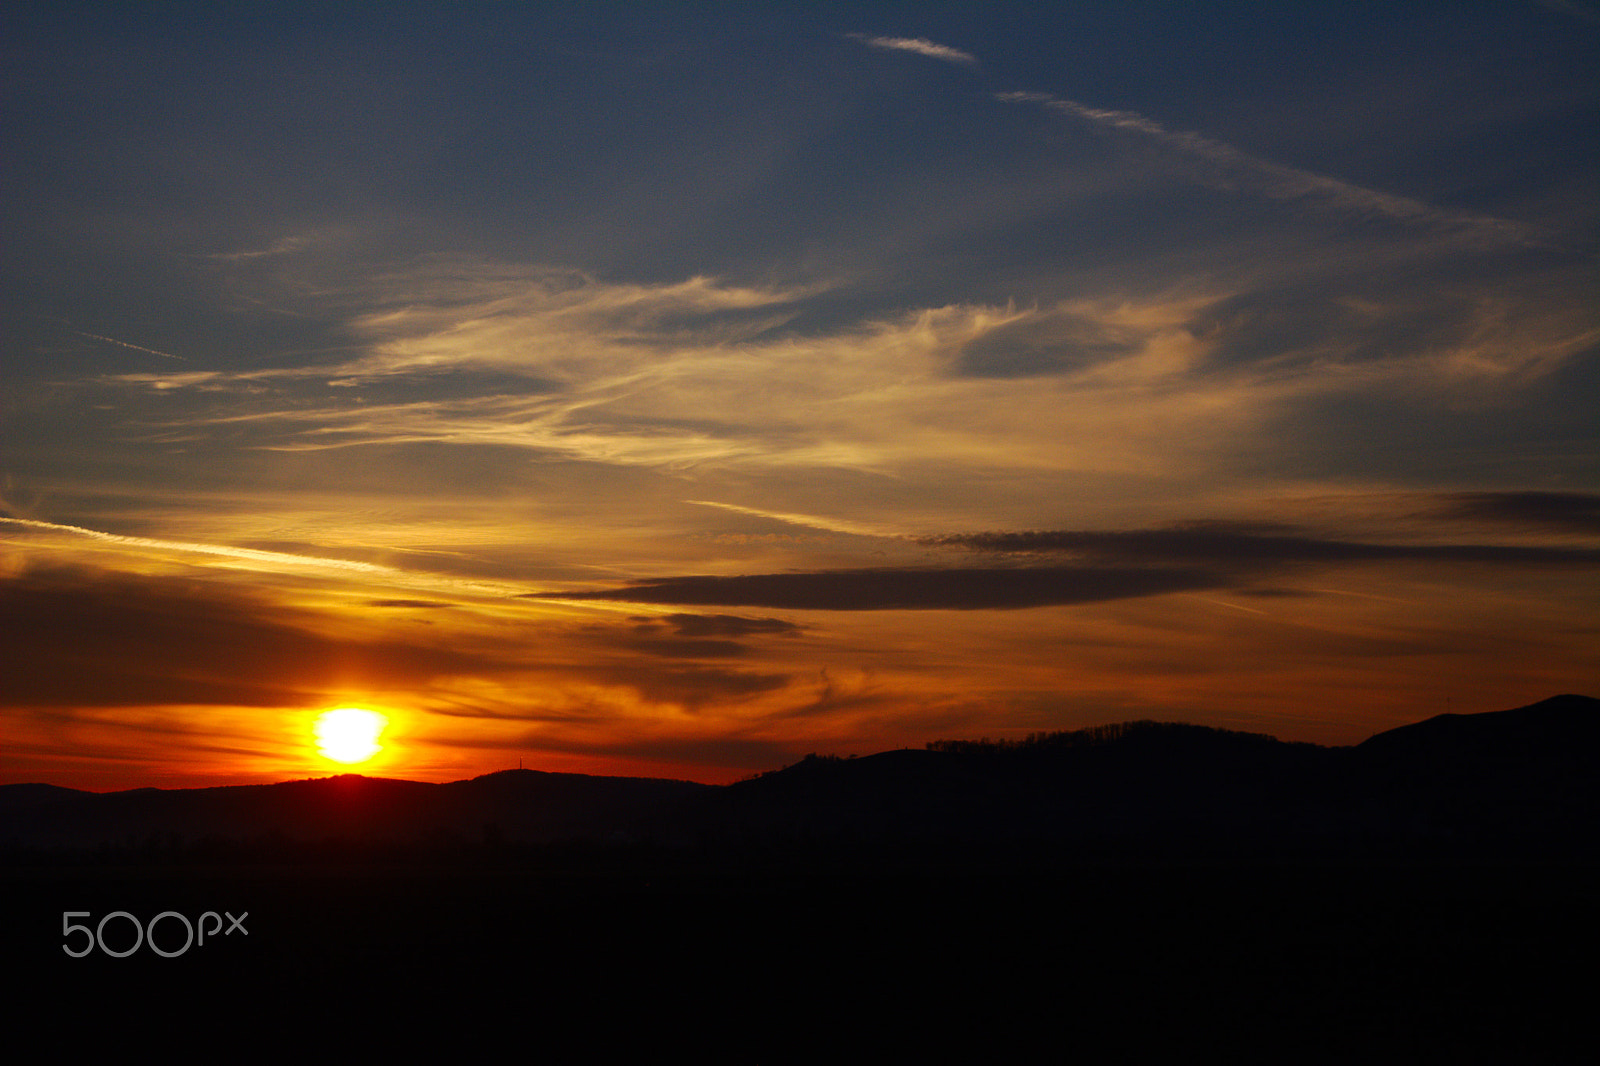 Nikon D7100 sample photo. Sunset on the tarnava valley photography